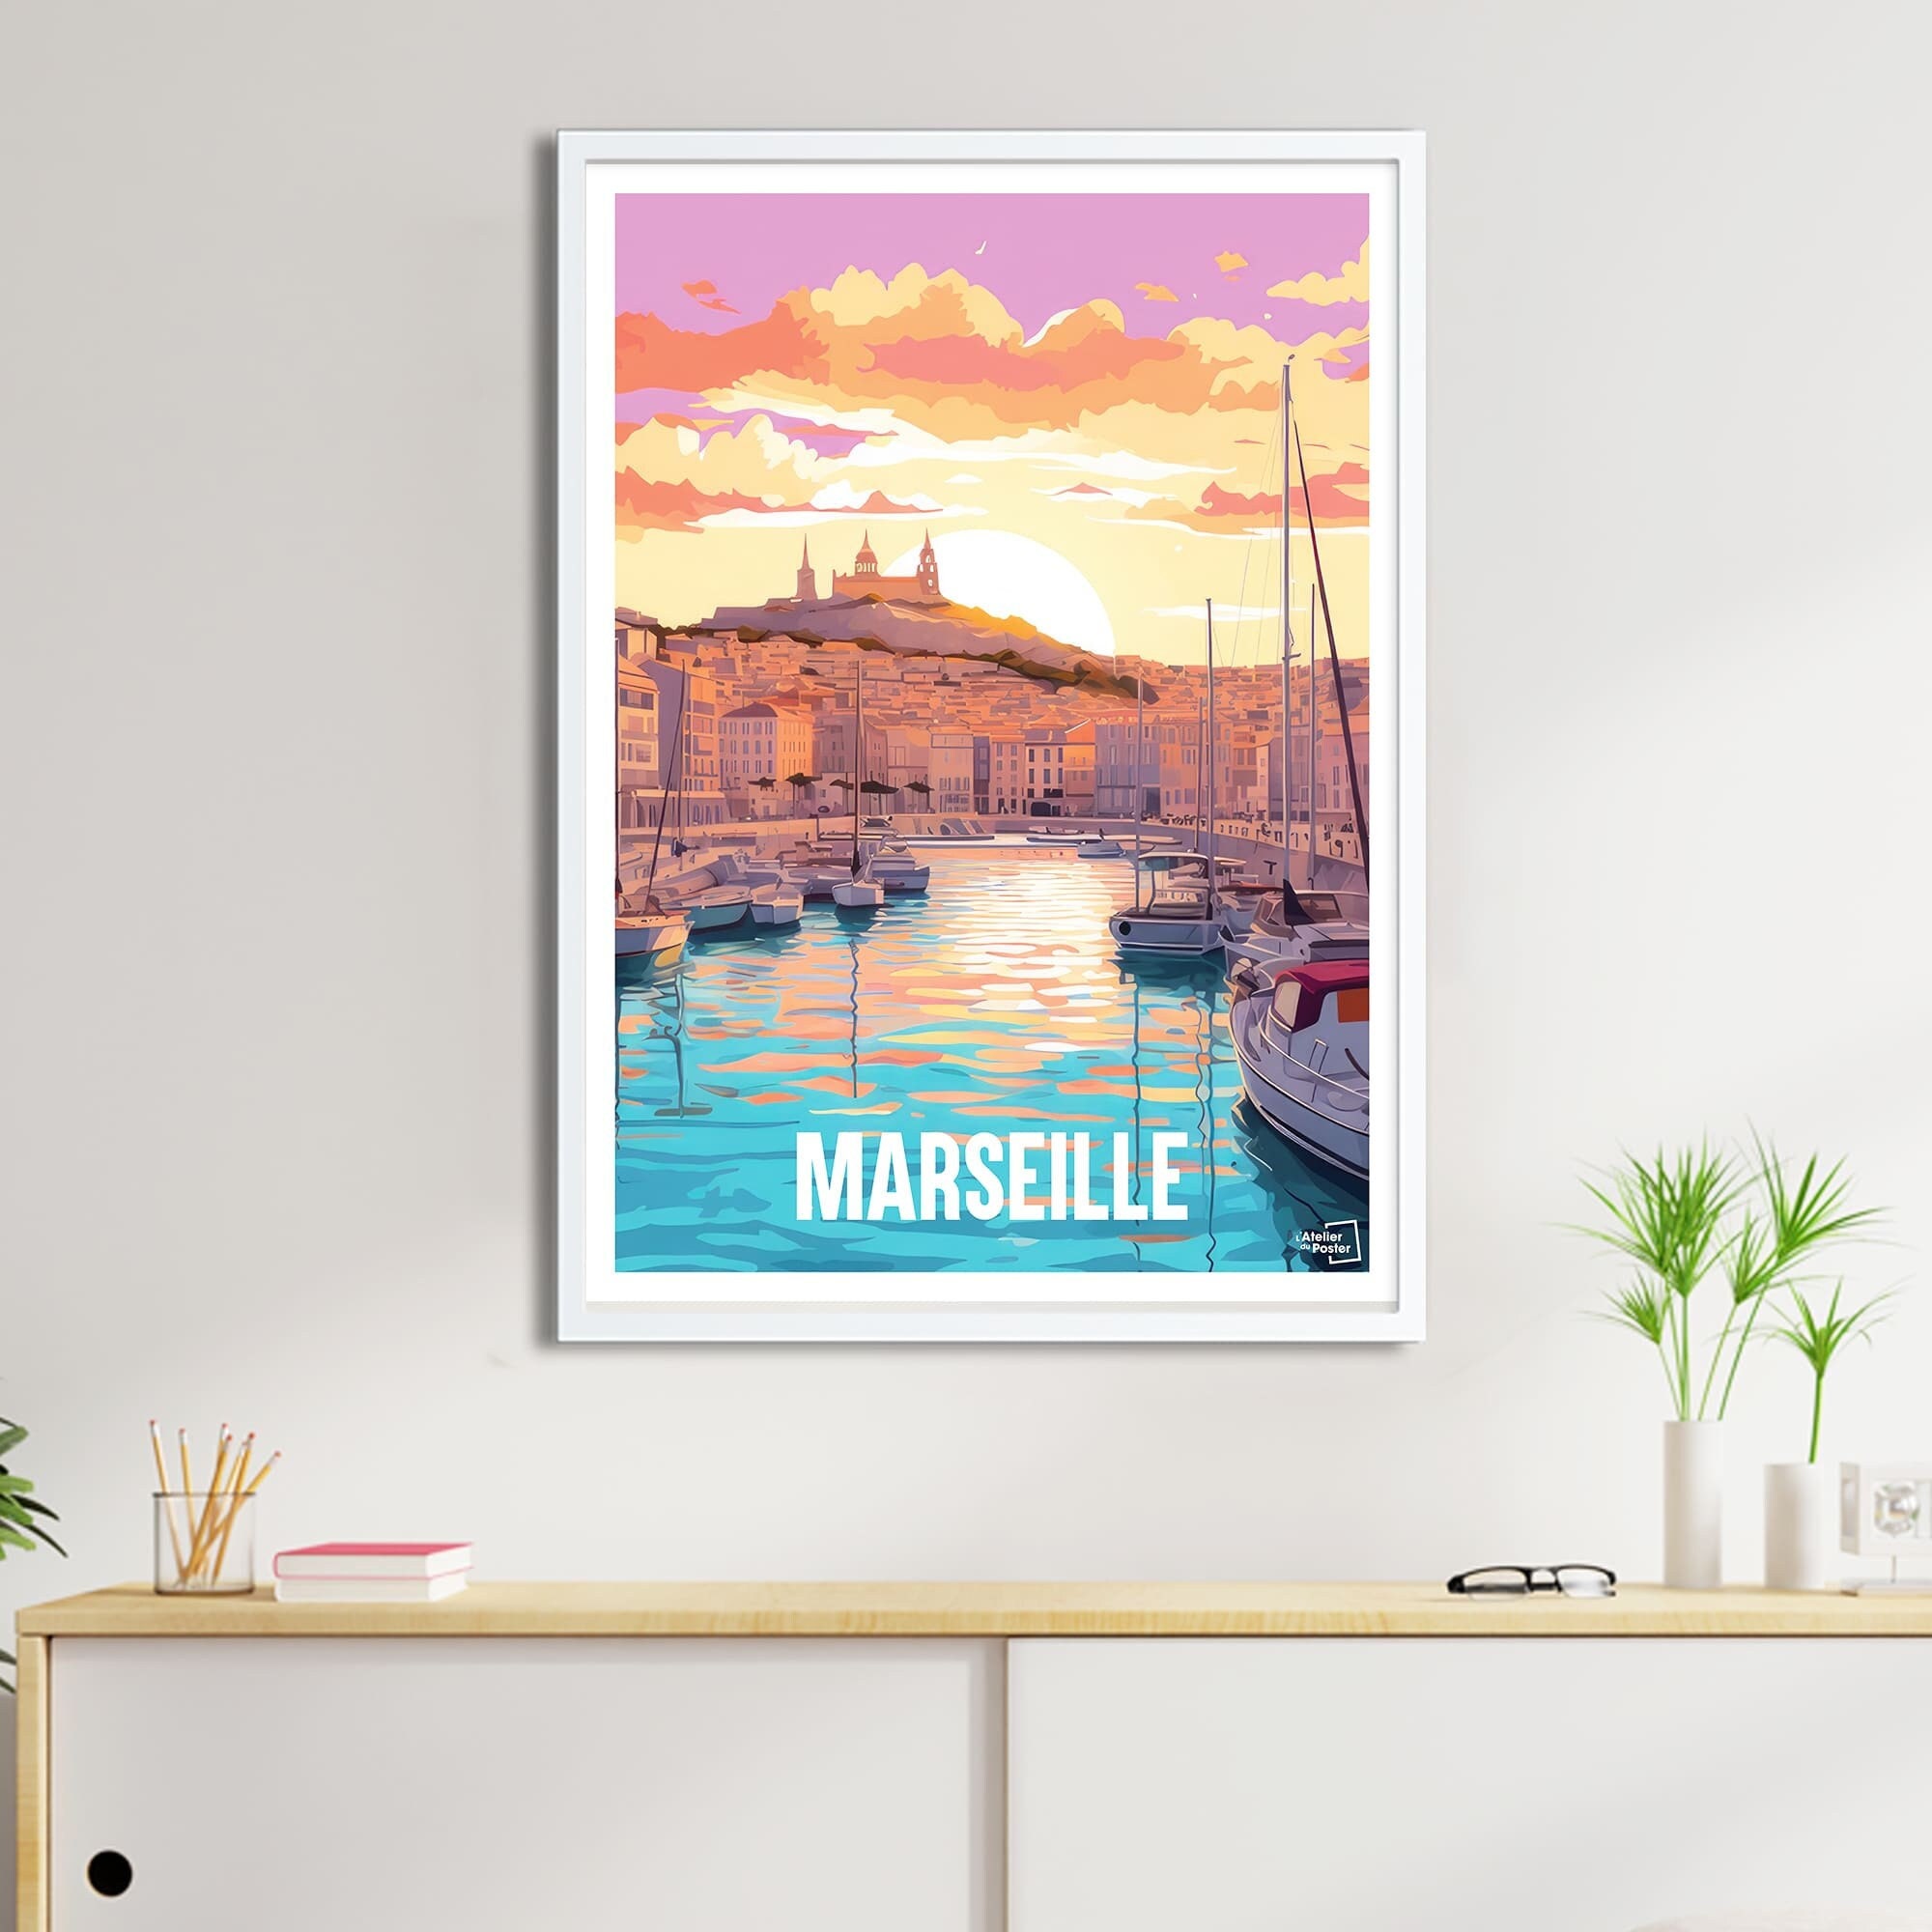 Poster Marseille - Le Poster Français